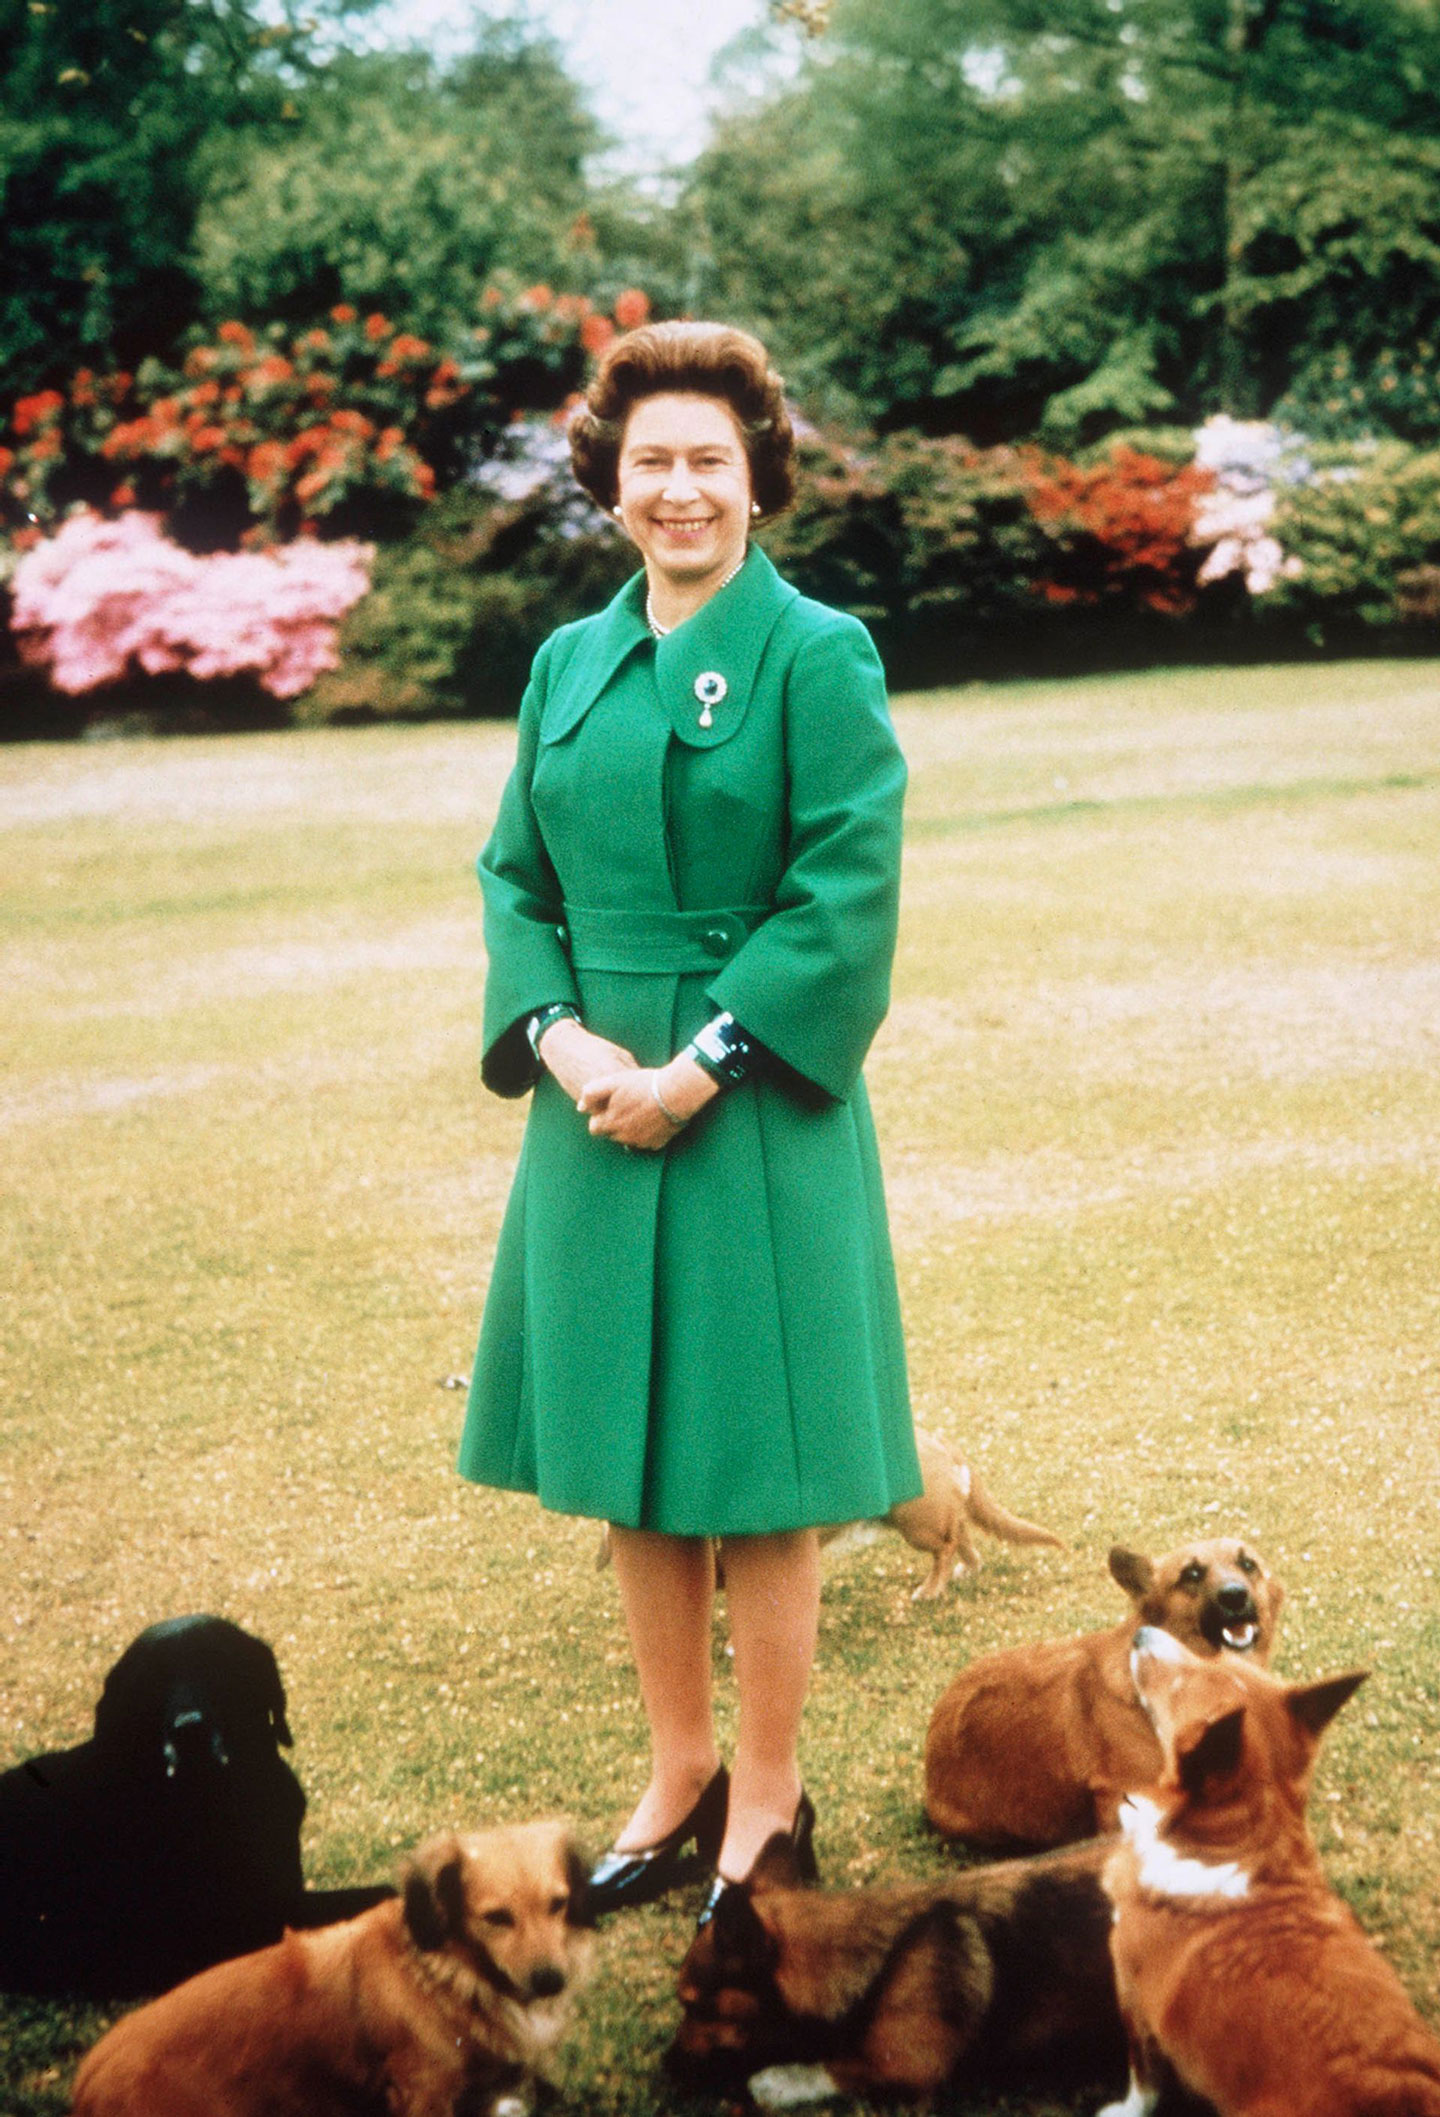 Queen Elizabeth II with her corgis in 1960